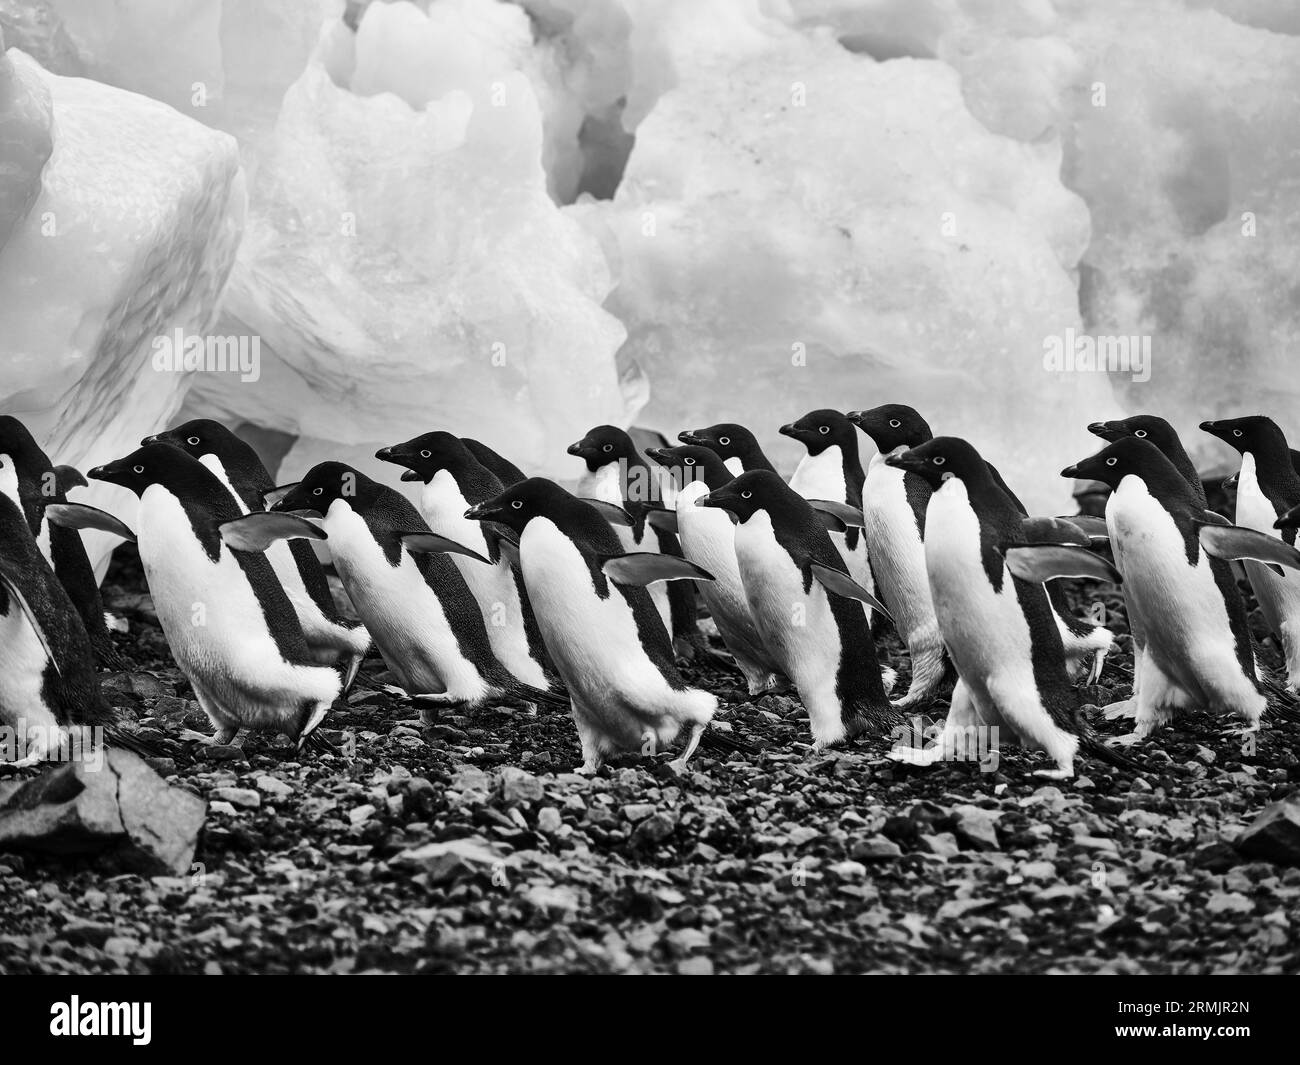 Manchots Adélie marchant sur les rochers le long de la glace, péninsule Antarctique, mer de Weddell, Antarctique Banque D'Images